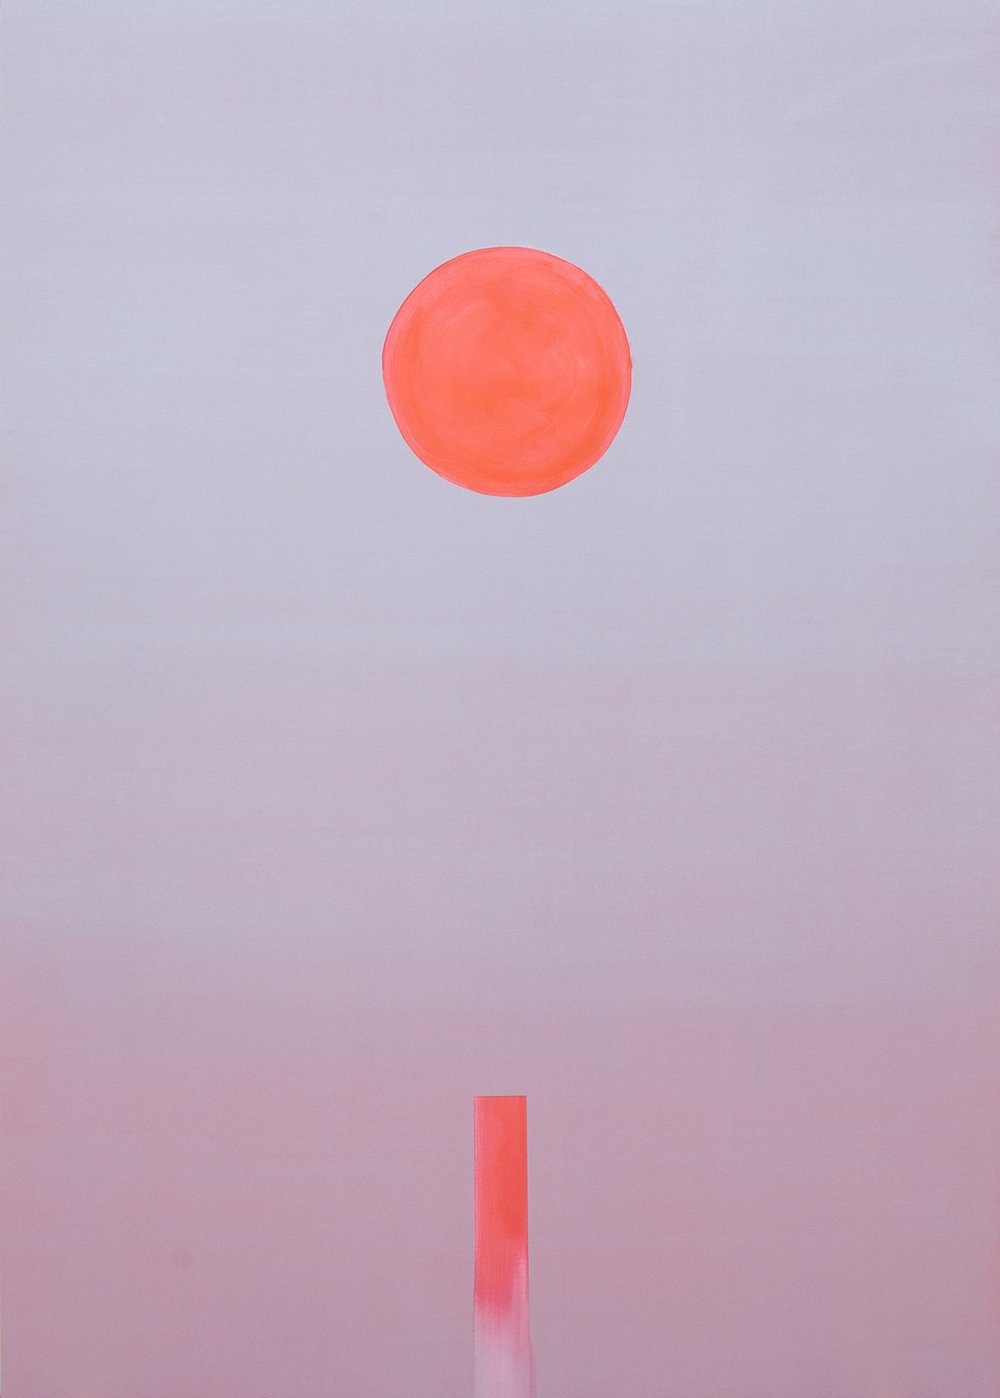  Luminous Red Sun, Wanda Koop